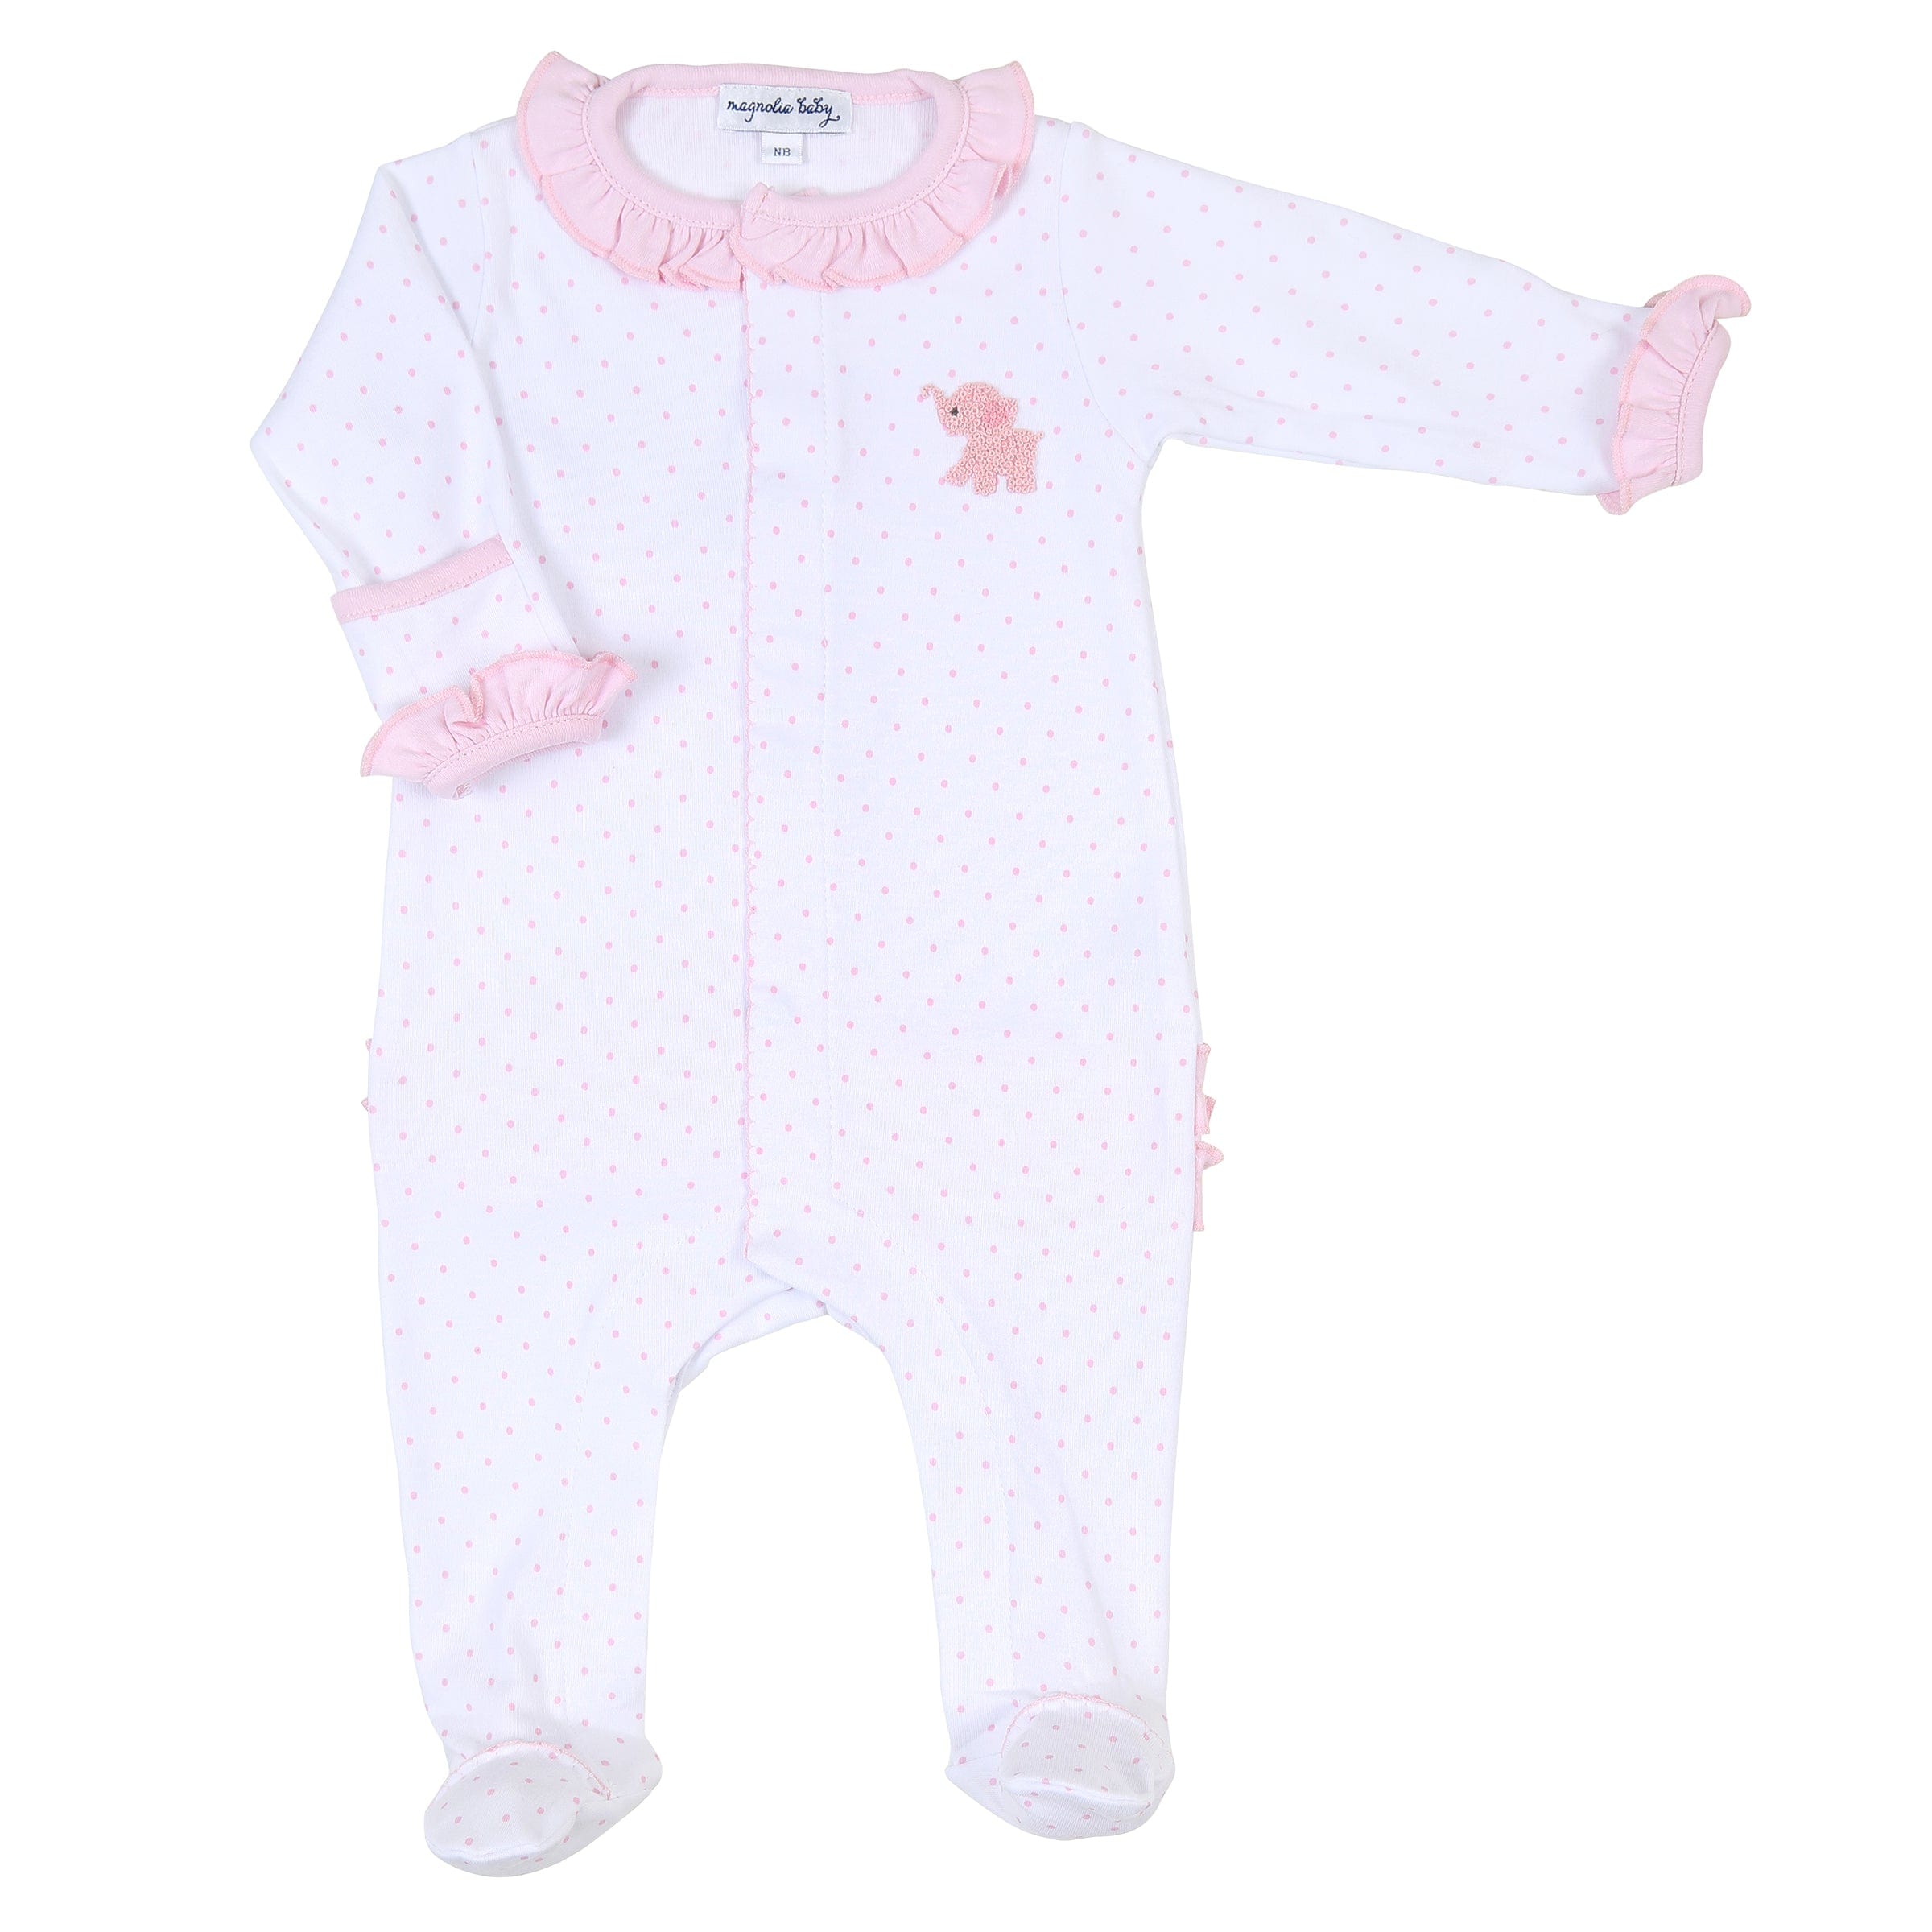 MAGNOLIA BABY - Tiny Elephant Ruffle Babygrow - Pink